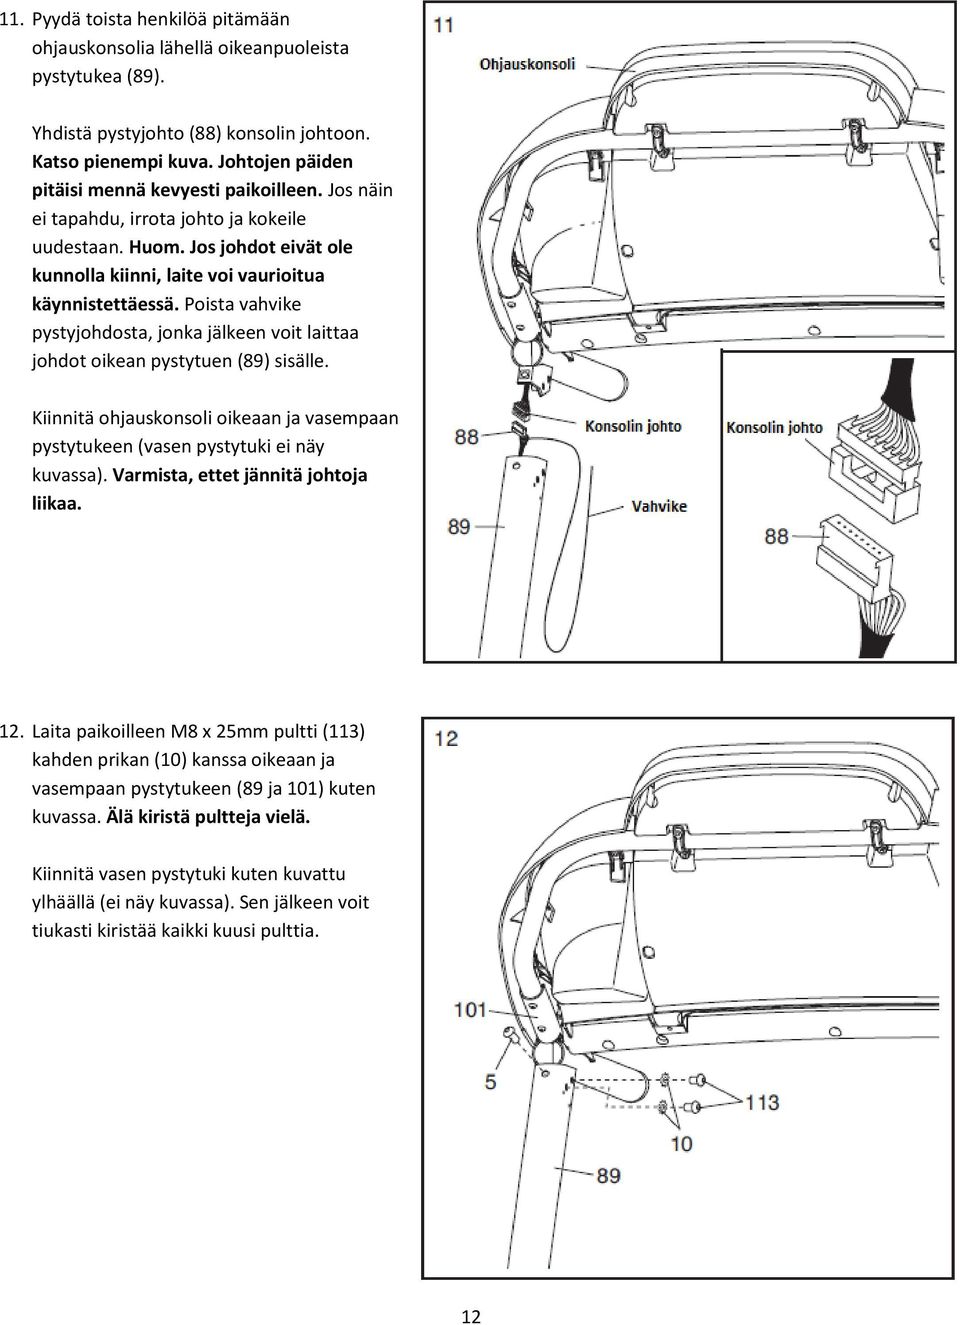 Poista vahvike pystyjohdosta, jonka jälkeen voit laittaa johdot oikean pystytuen (89) sisälle. Kiinnitä ohjauskonsoli oikeaan ja vasempaan pystytukeen (vasen pystytuki ei näy kuvassa).